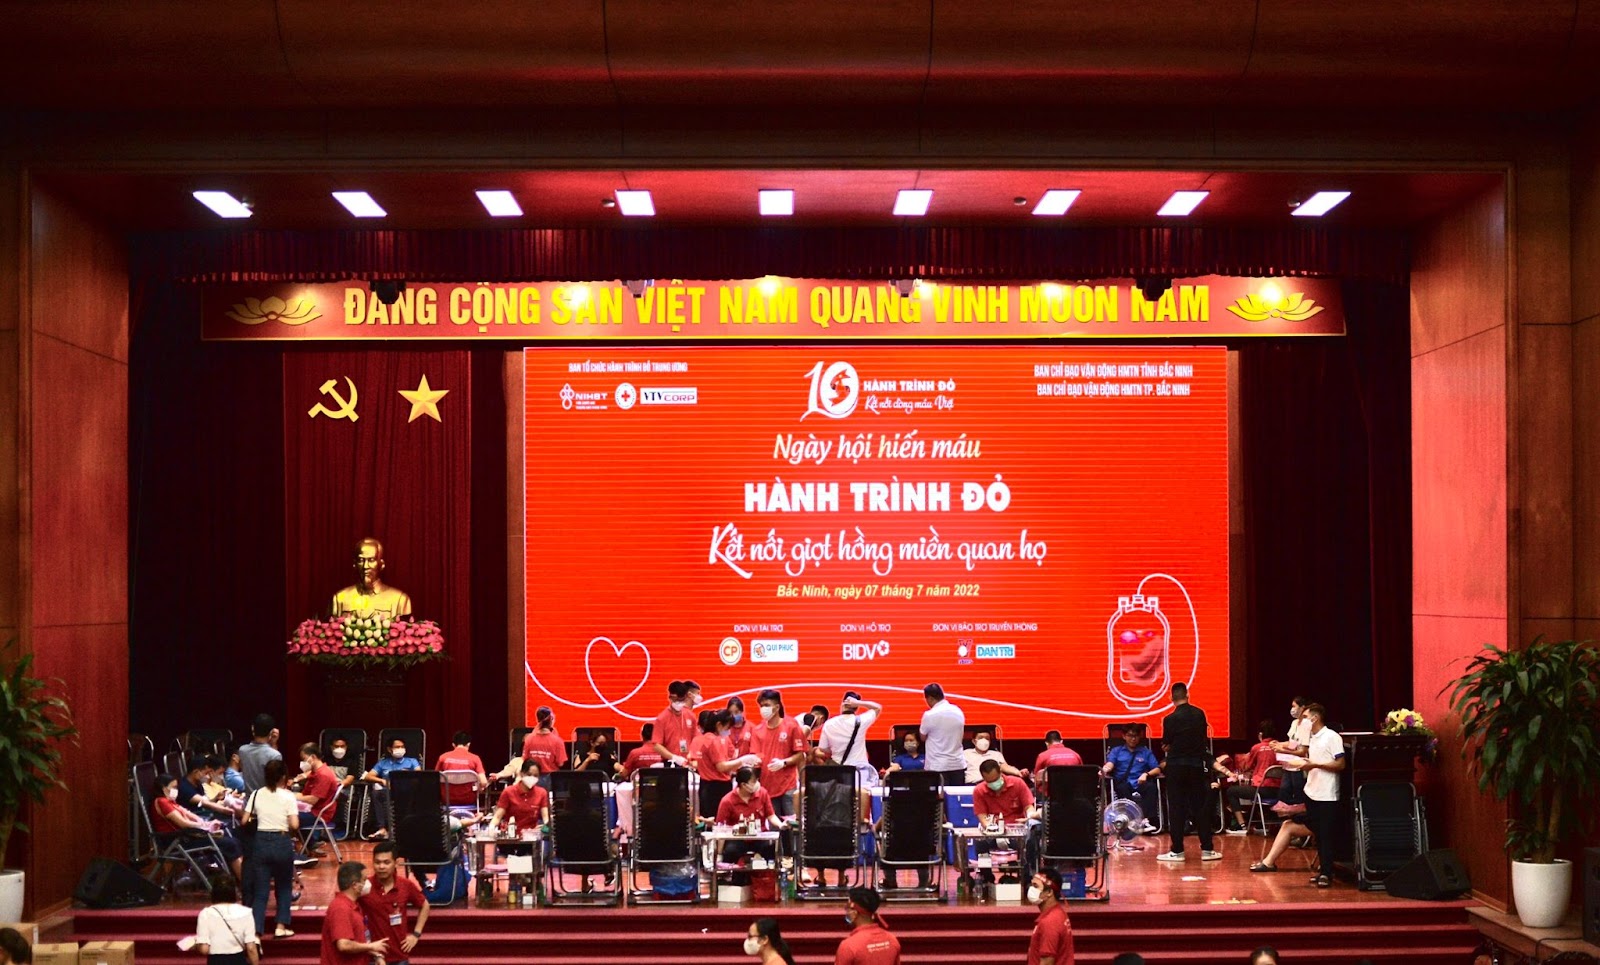 Bắc Ninh: Hàng nghìn người hưởng ứng chương trình hiến máu “Hành trình Đỏ - Kết nối giọt hồng miền quan họ”